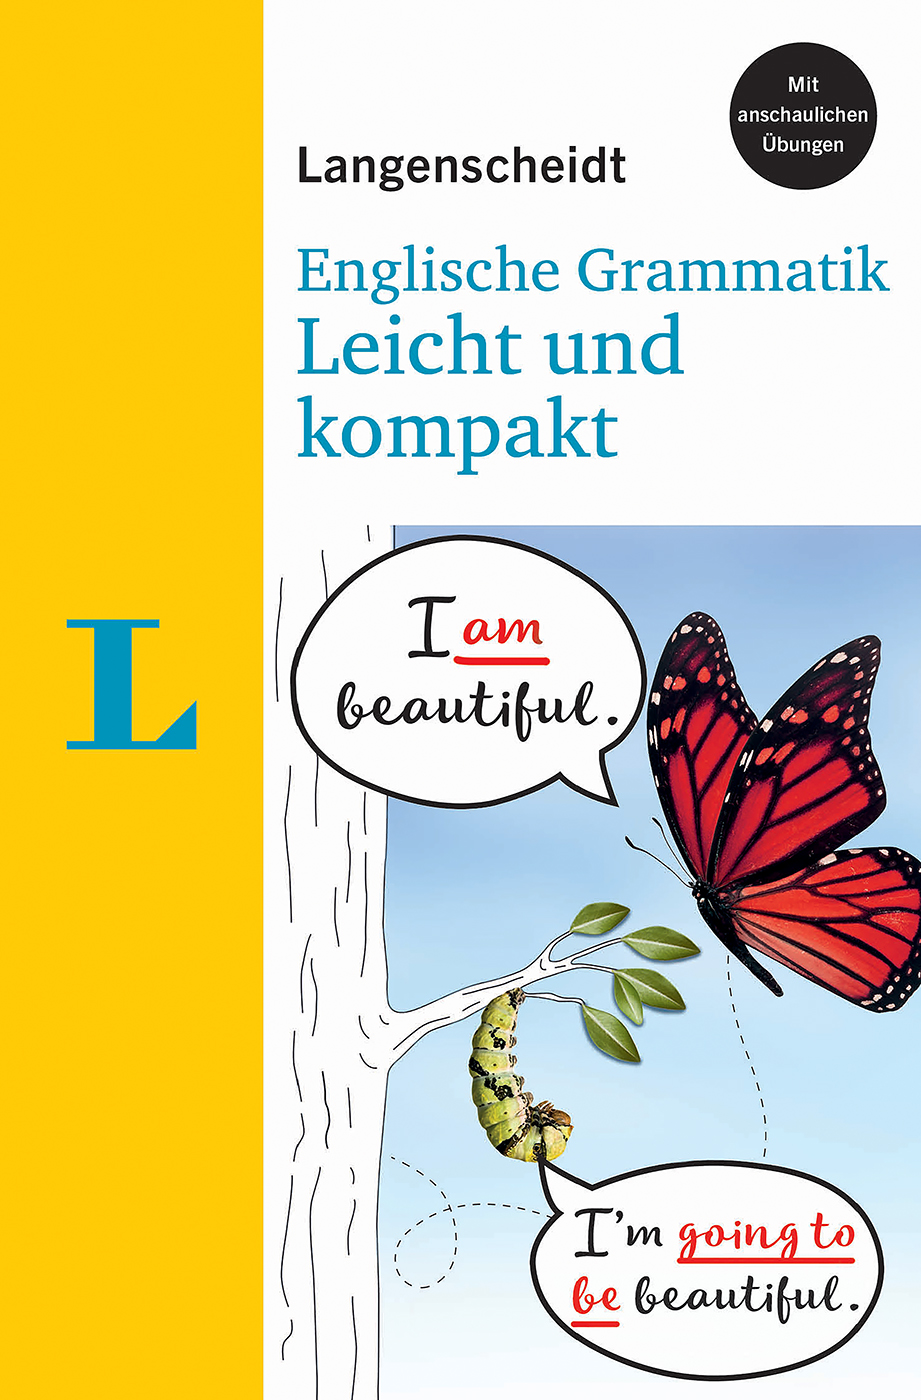 Langenscheidt Englische Grammatik Leicht und kompakt